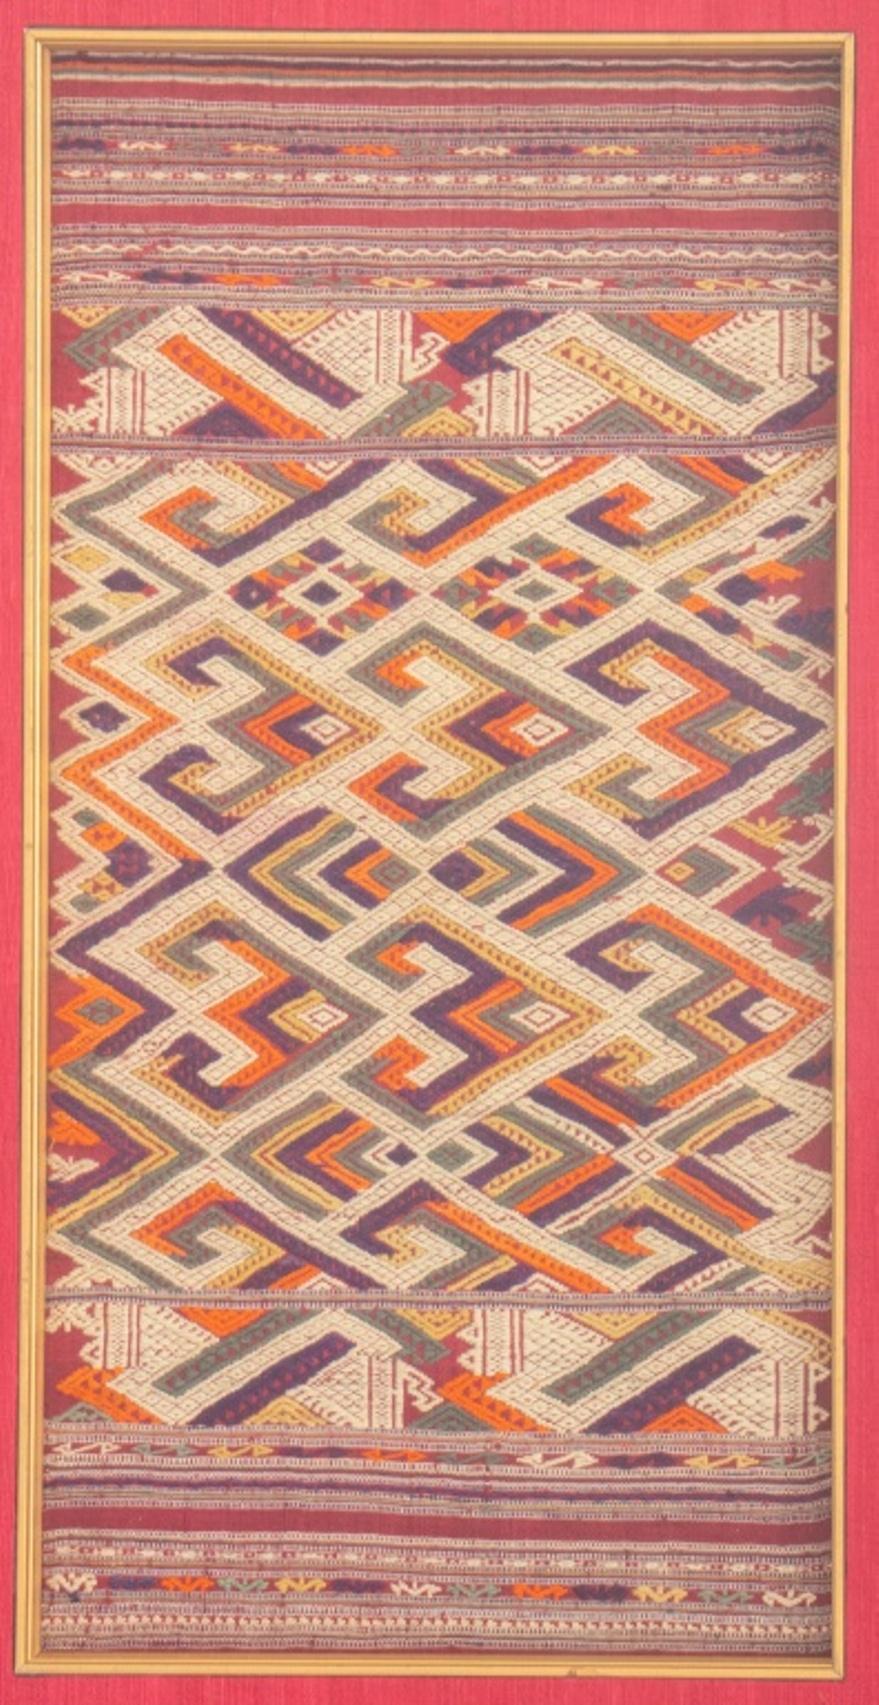 Panneau de textile Kilim noué à la main, encadré, en bon état. Usure conforme à l'âge et à l'utilisation.

Dimensions : Image : 19,5